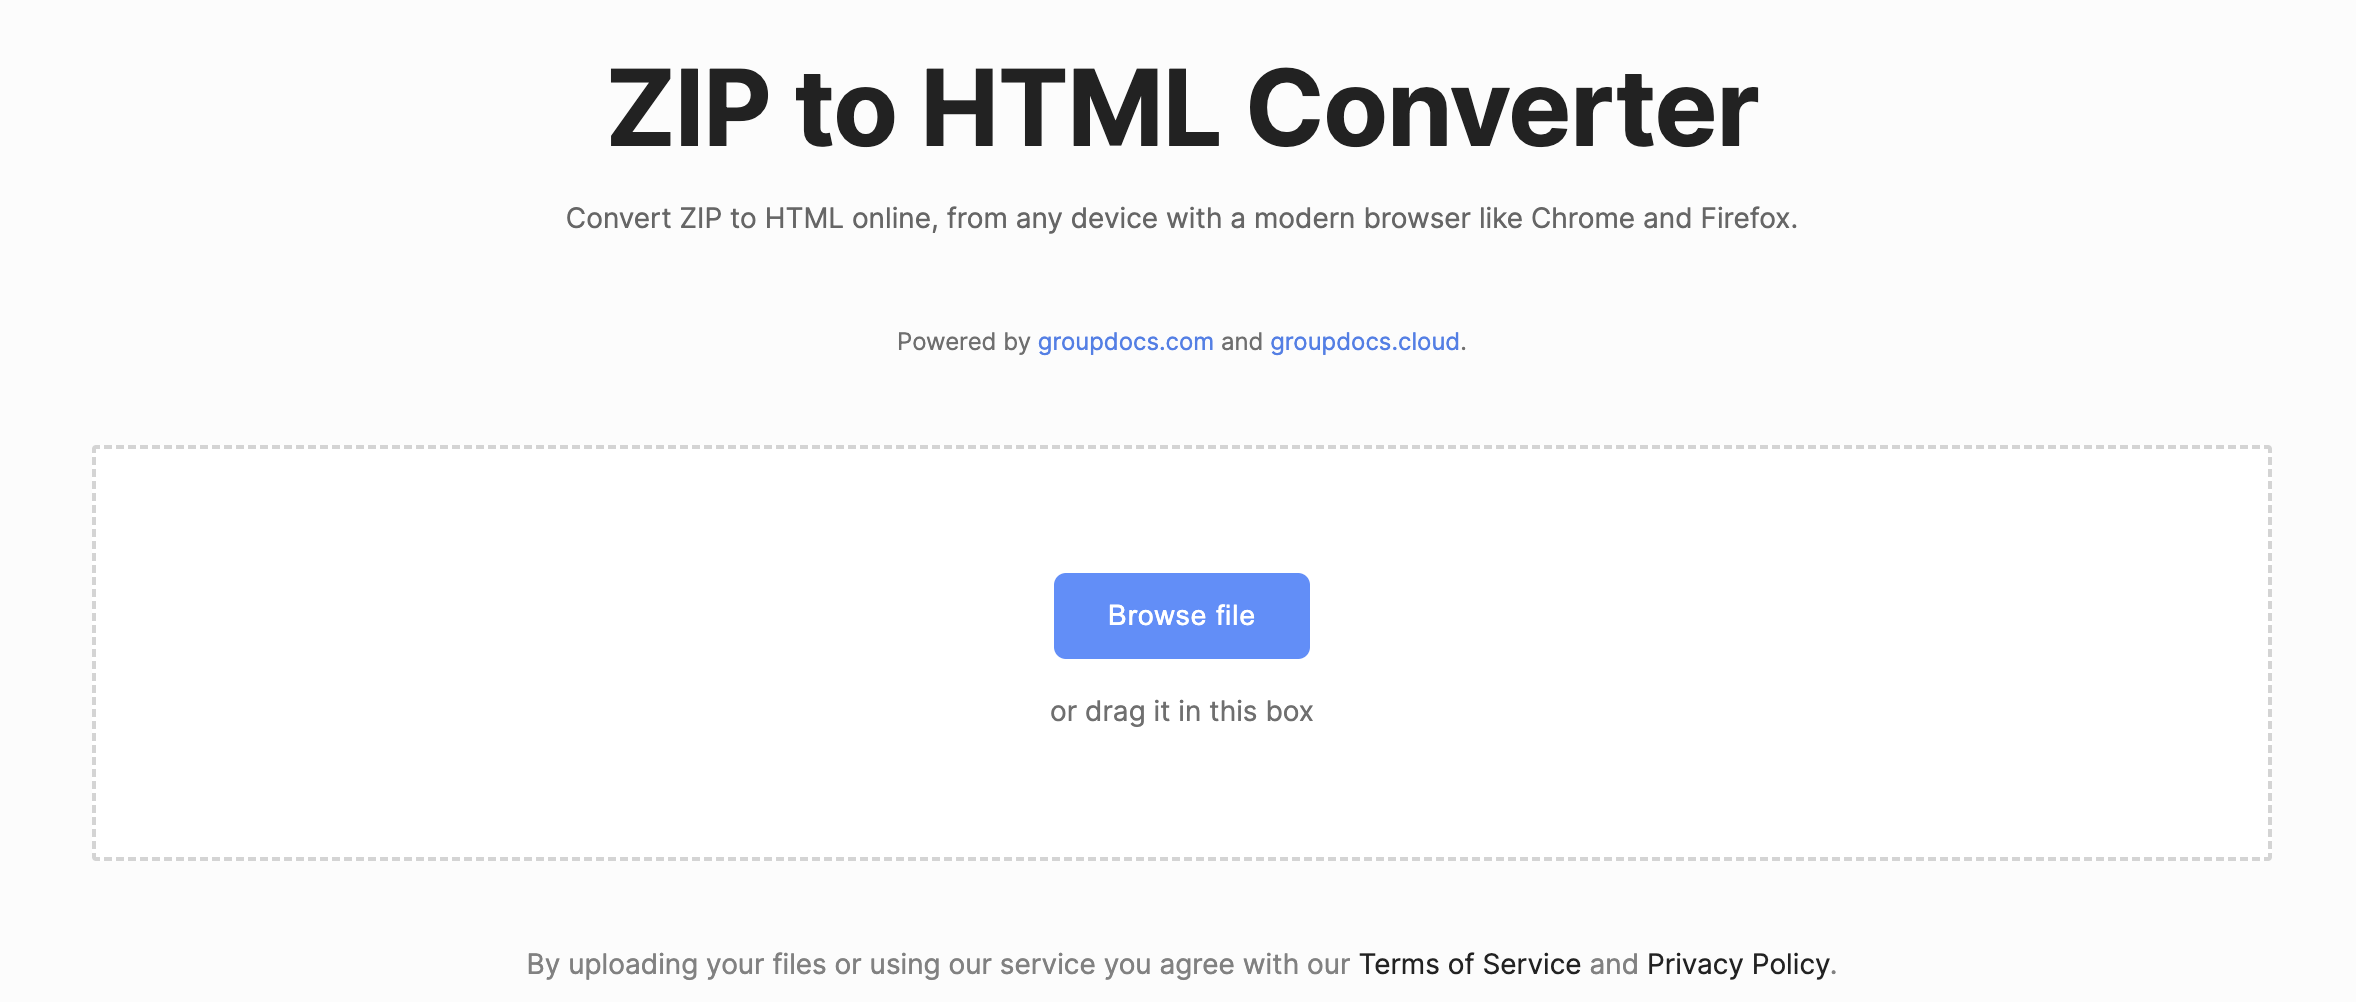 Converti ZIP in HTML online